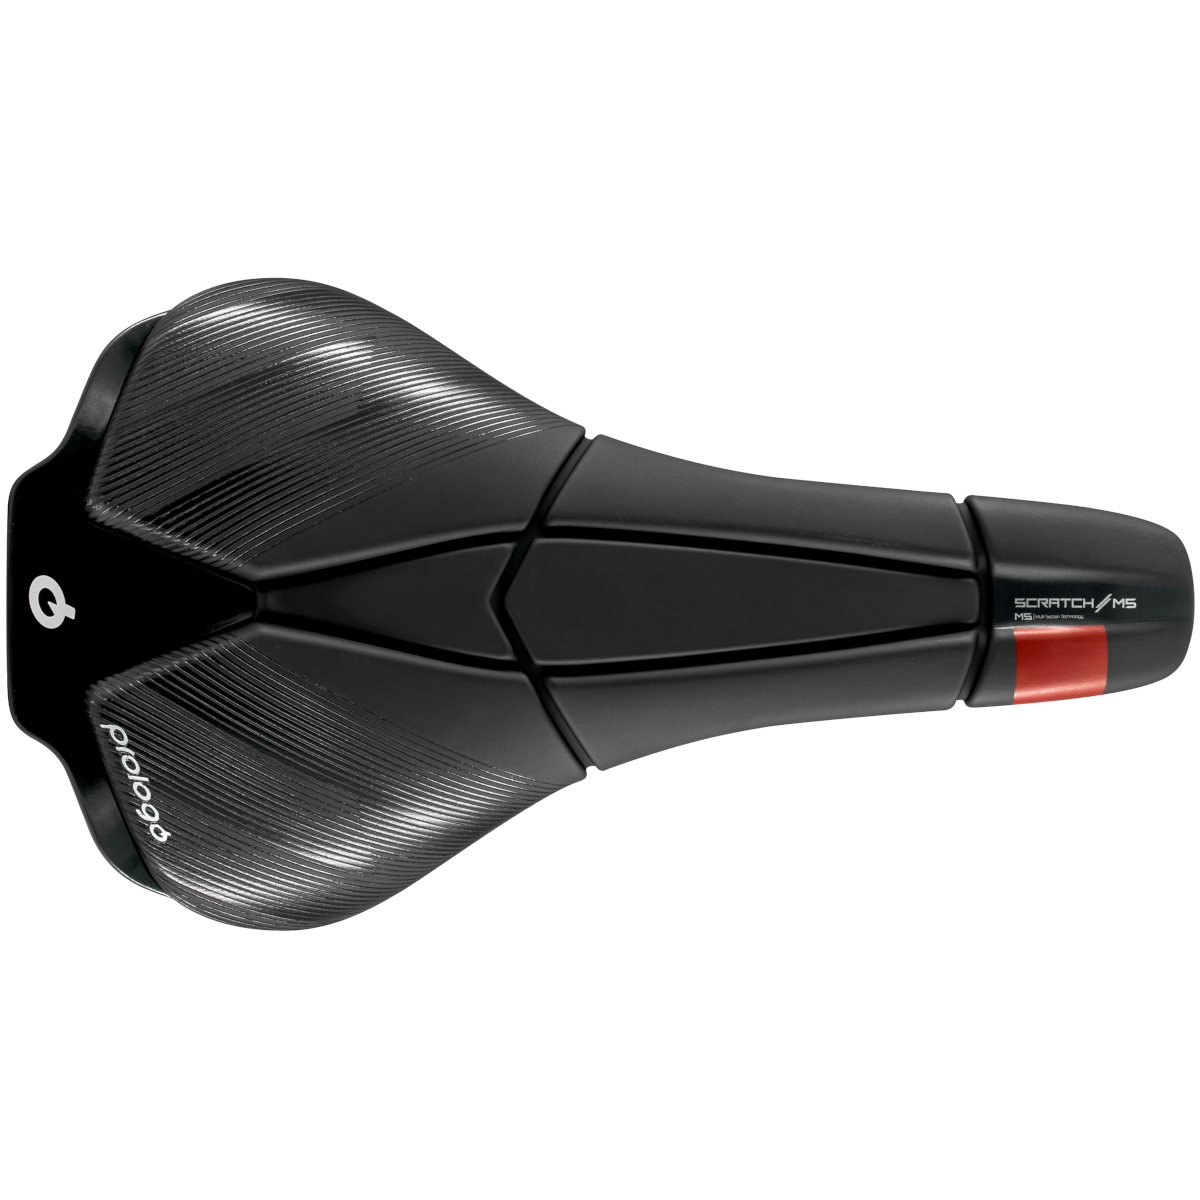 Productfoto van Prologo Scratch M5 AGX TiroX Zadel - zwart